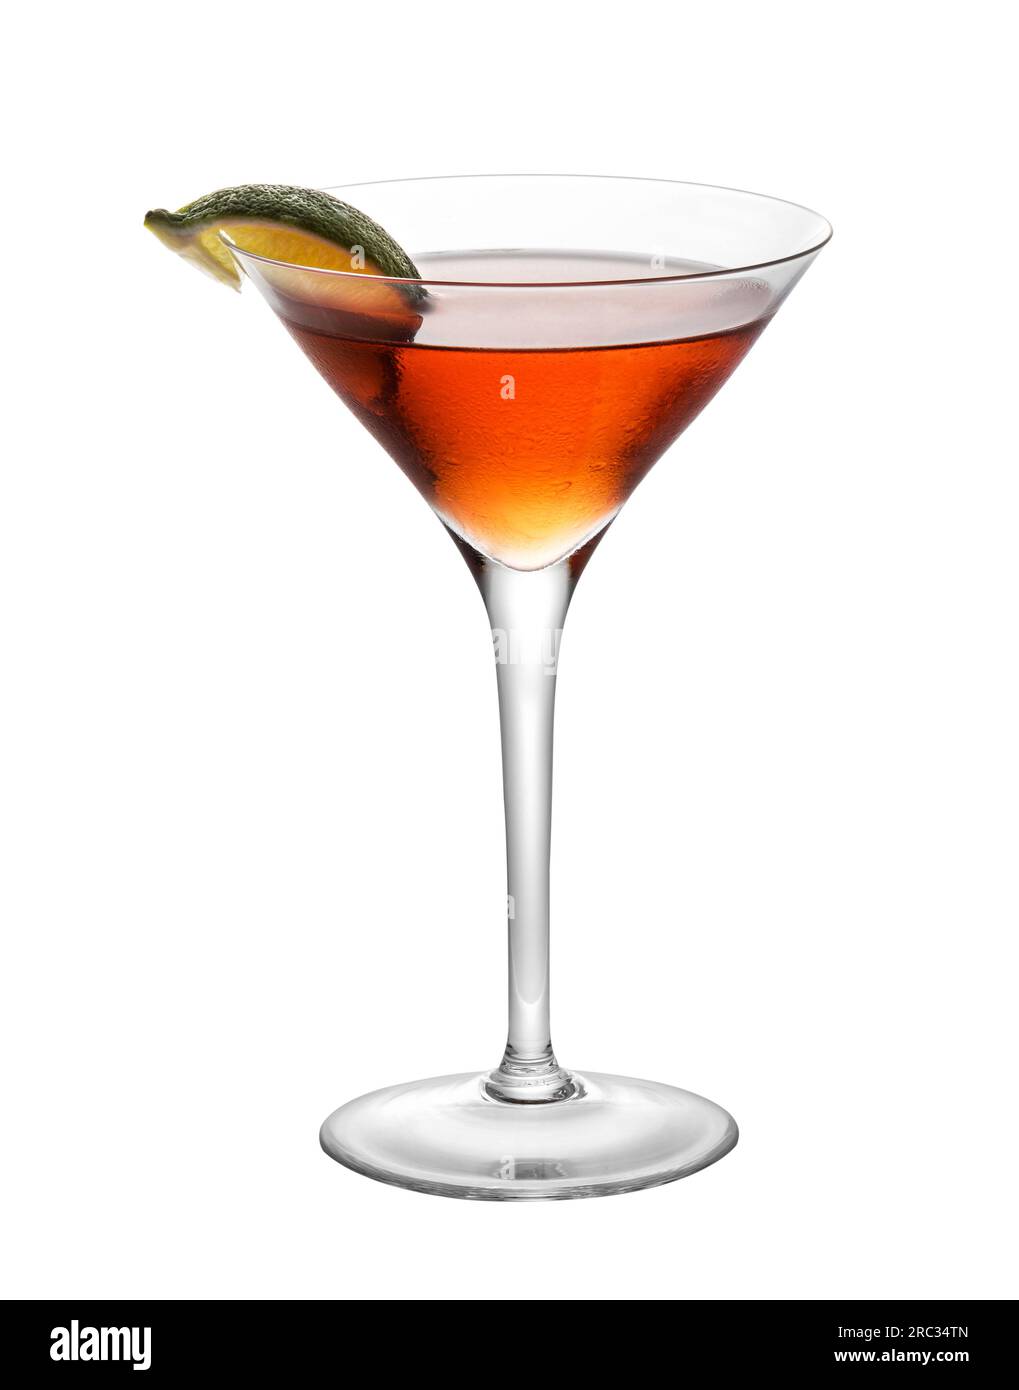 Cocktail rouge cosmopolite servi dans un verre à martini avec tranche de citron vert isolé sur fond blanc Banque D'Images